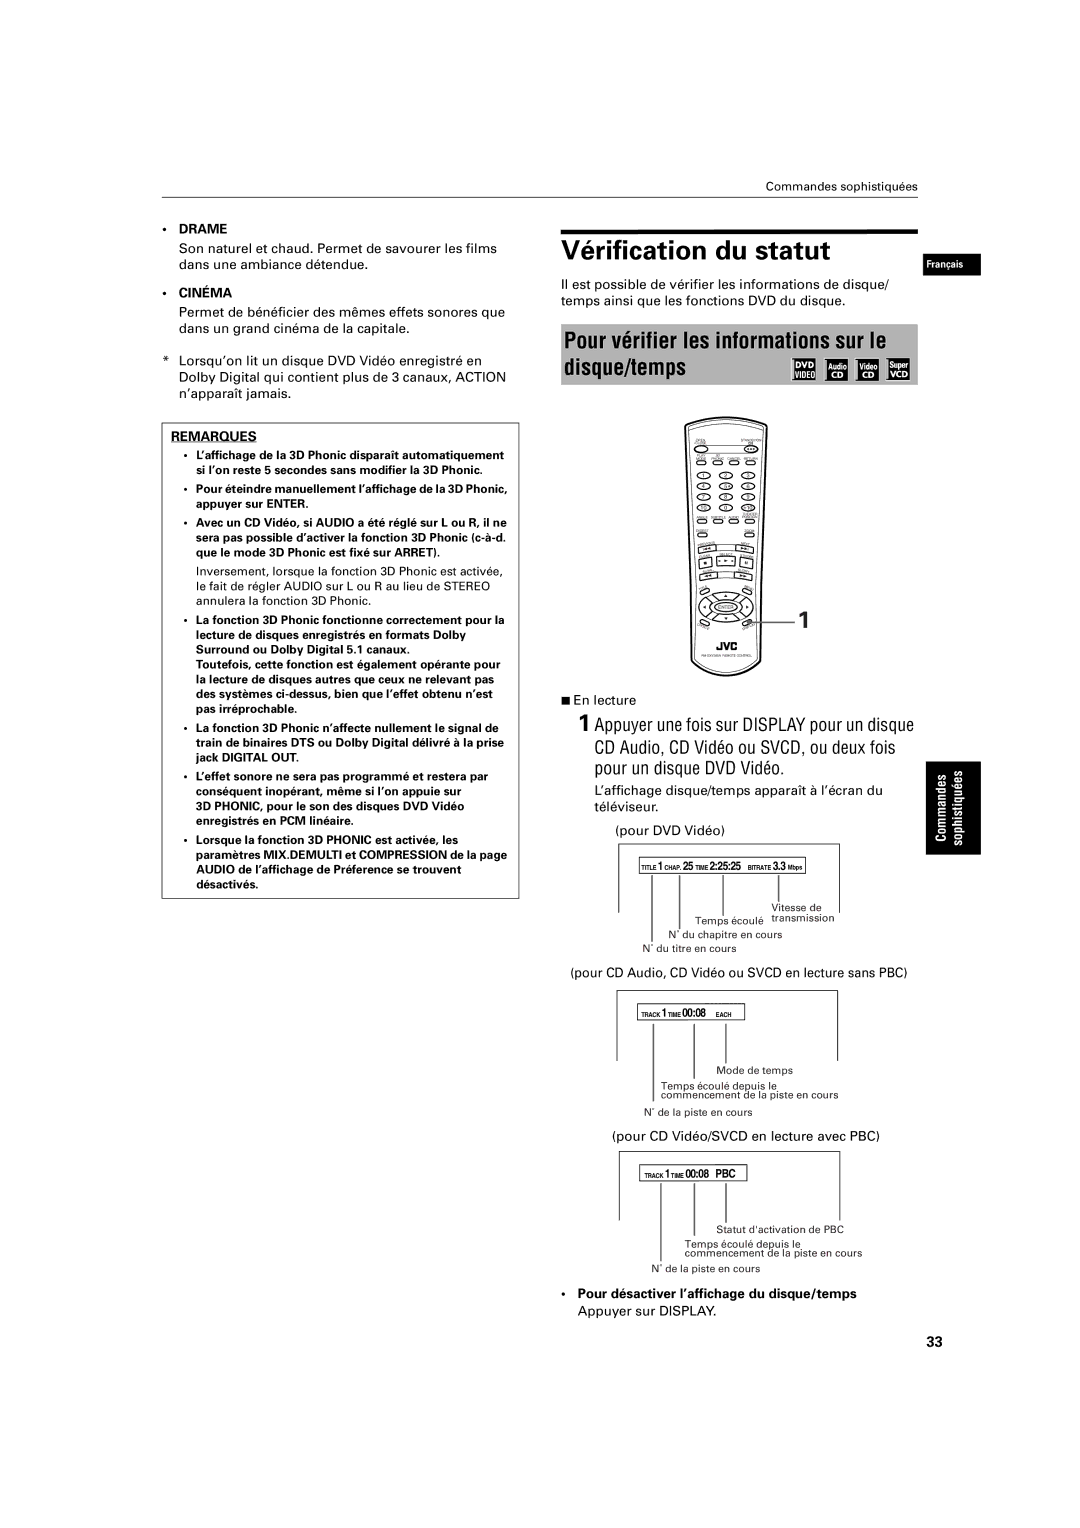 JVC XV-S200 manual Vérification du statut, Pour vérifier les informations sur le disque/temps, Drame, Cinéma 